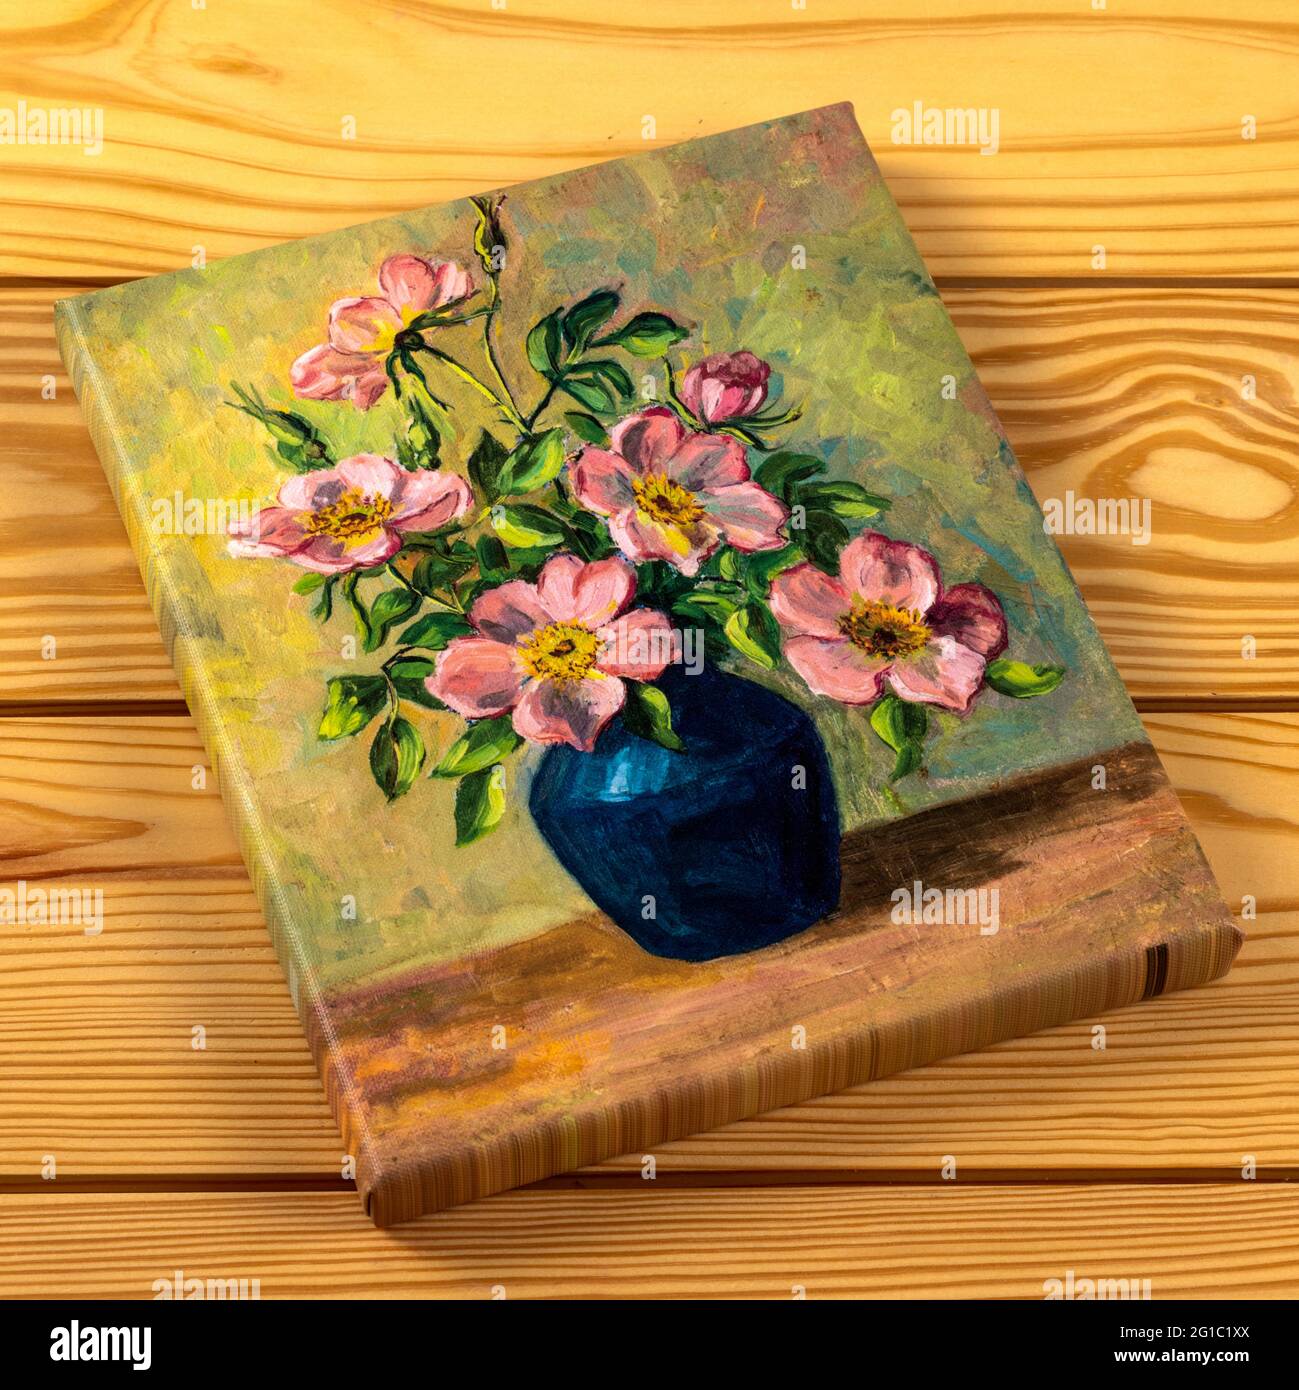 Gerahmter Leinwanddruck von Vintage-Ölgemälde von Blumen in Vase isoliert auf einem hölzernen Hintergrund. Urlaub oder besonderen Anlass Fine Art Print Geschenk concep Stockfoto